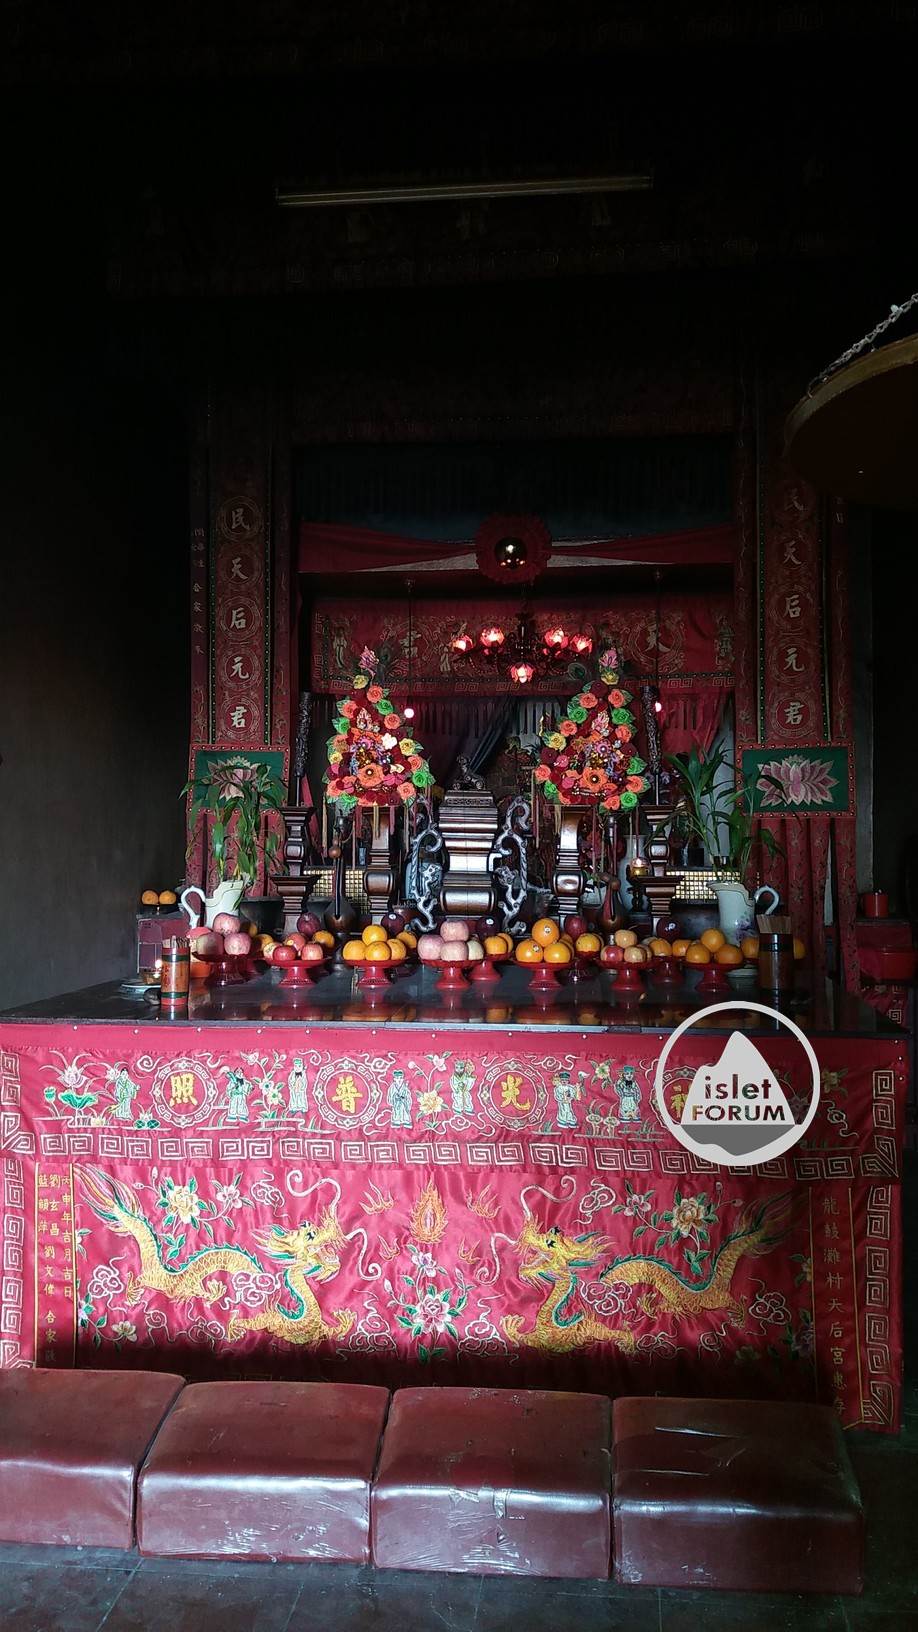 龍鼓灘天后廟lung kwu tan tin hau temple (13).jpg